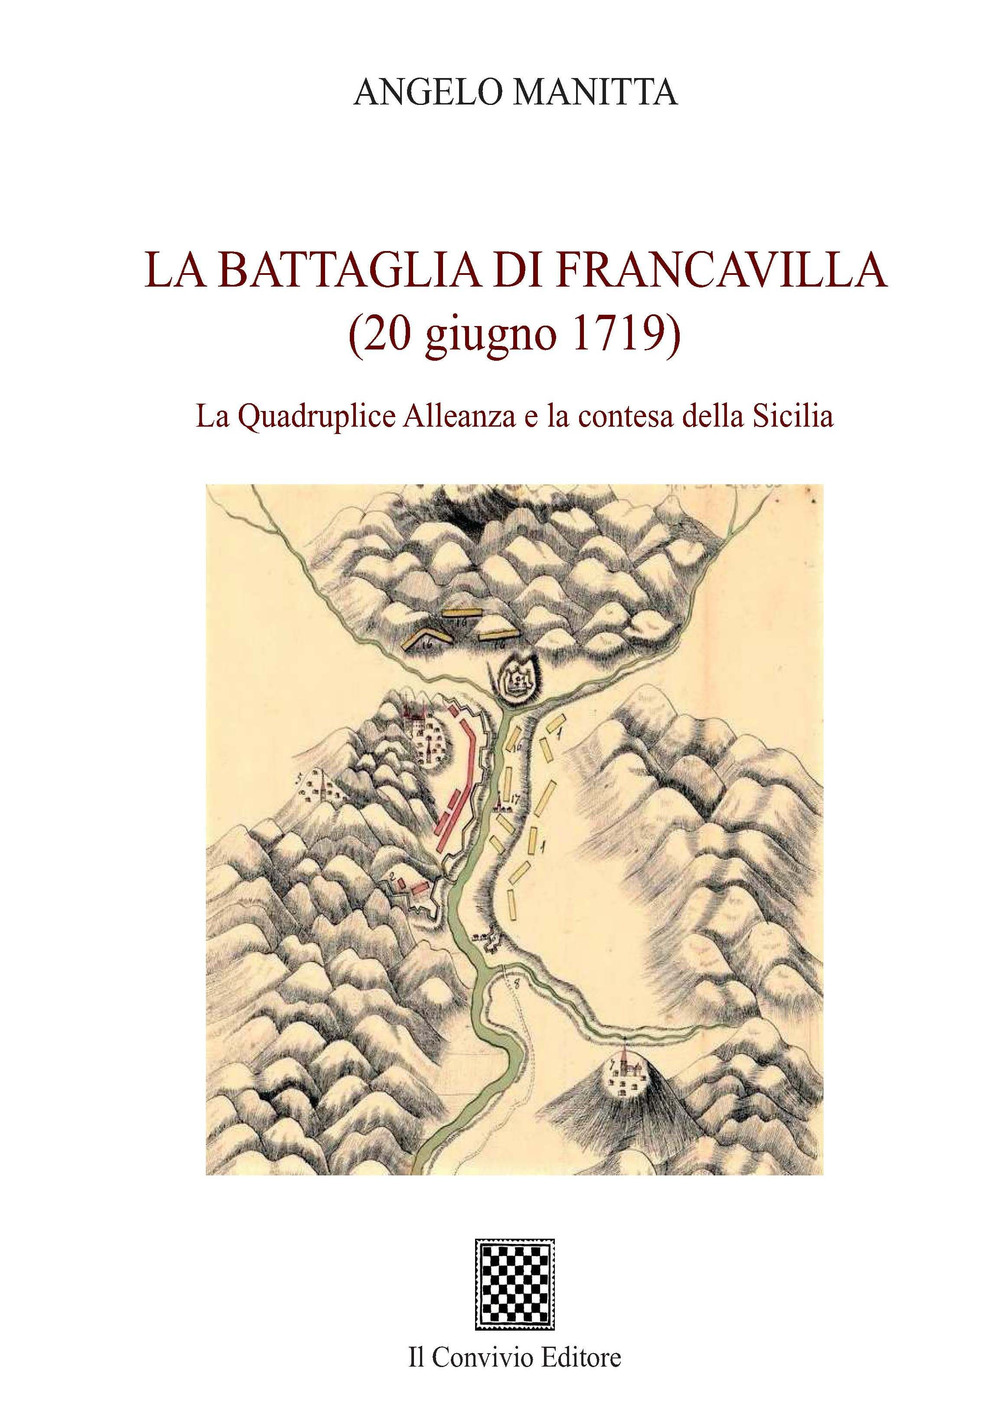 La battaglia di Francavilla (20 giugno 1719). La Quadruplice Alleanza e la contesa della Sicilia